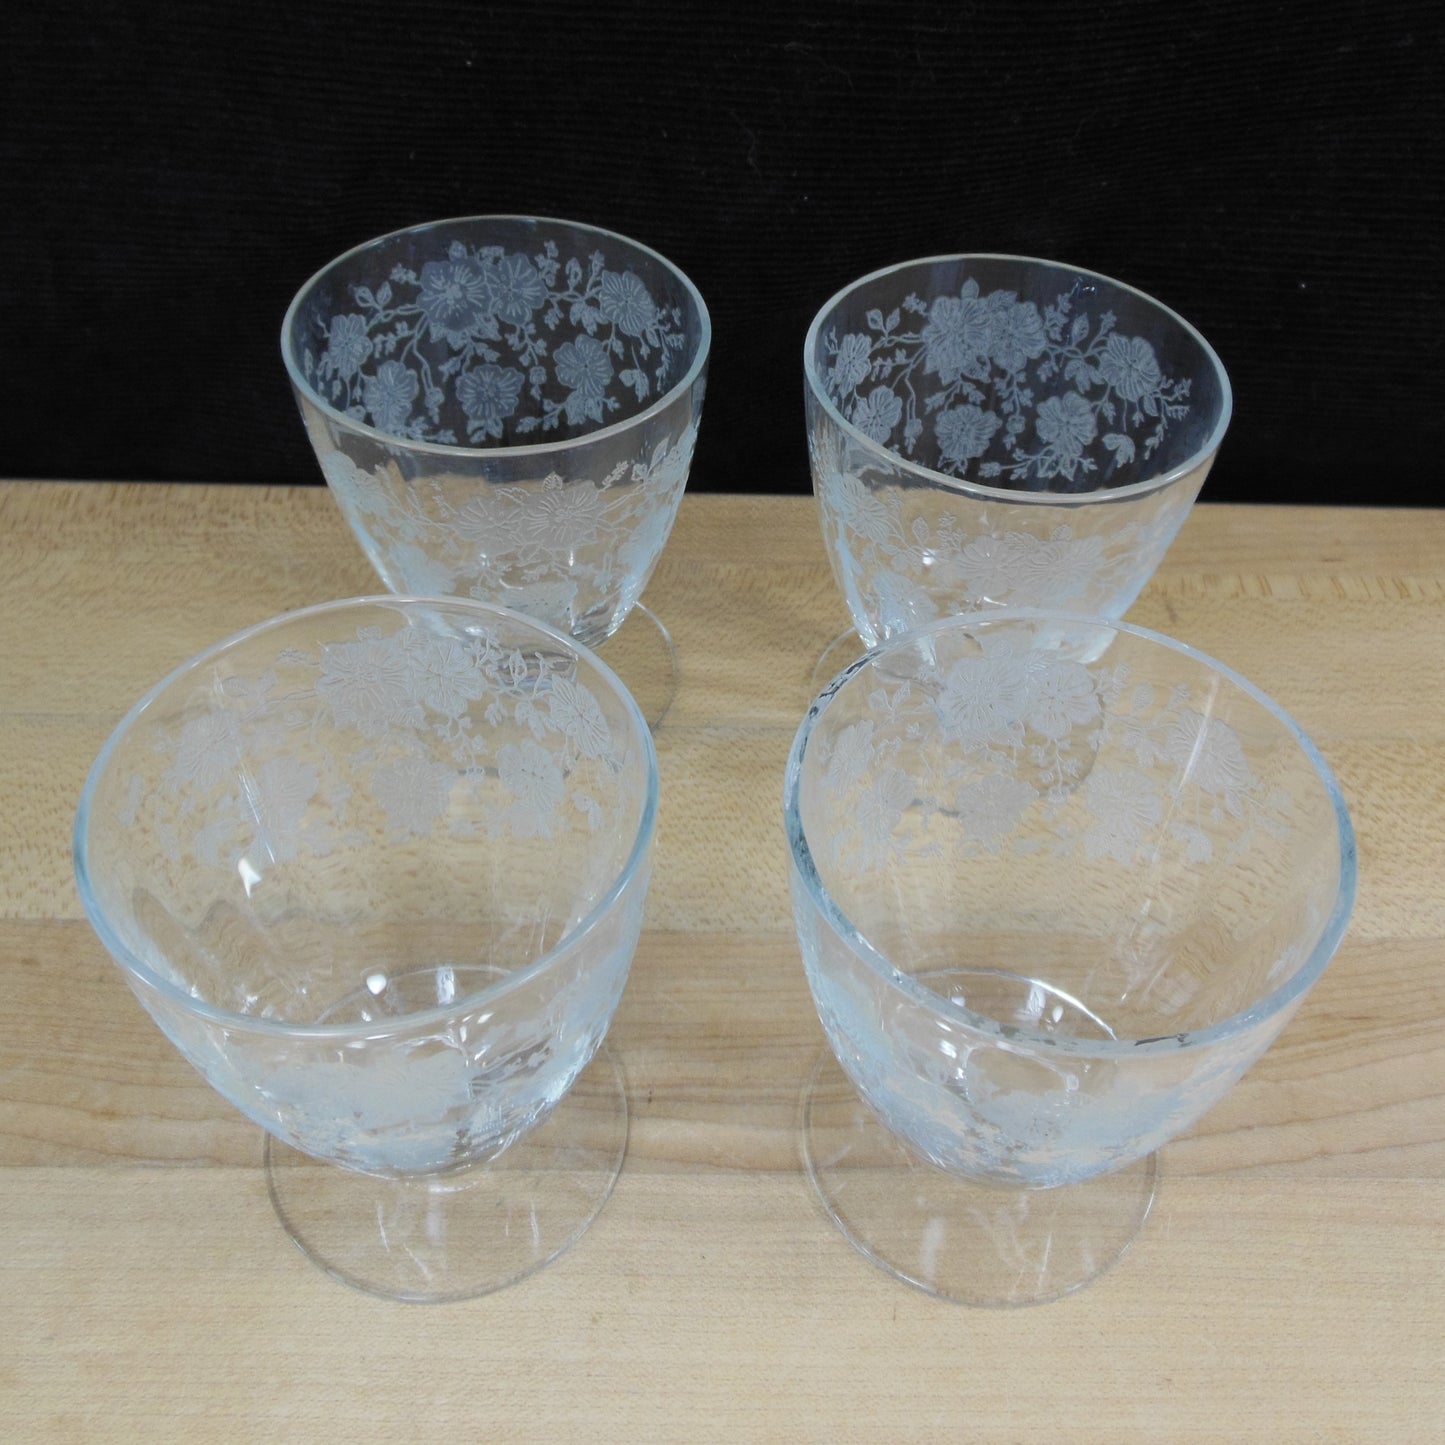 Unknown Maker UNK2629 Elegant Floral Etched Crystal Juice Glass - 4 Set Vintage Antique Used